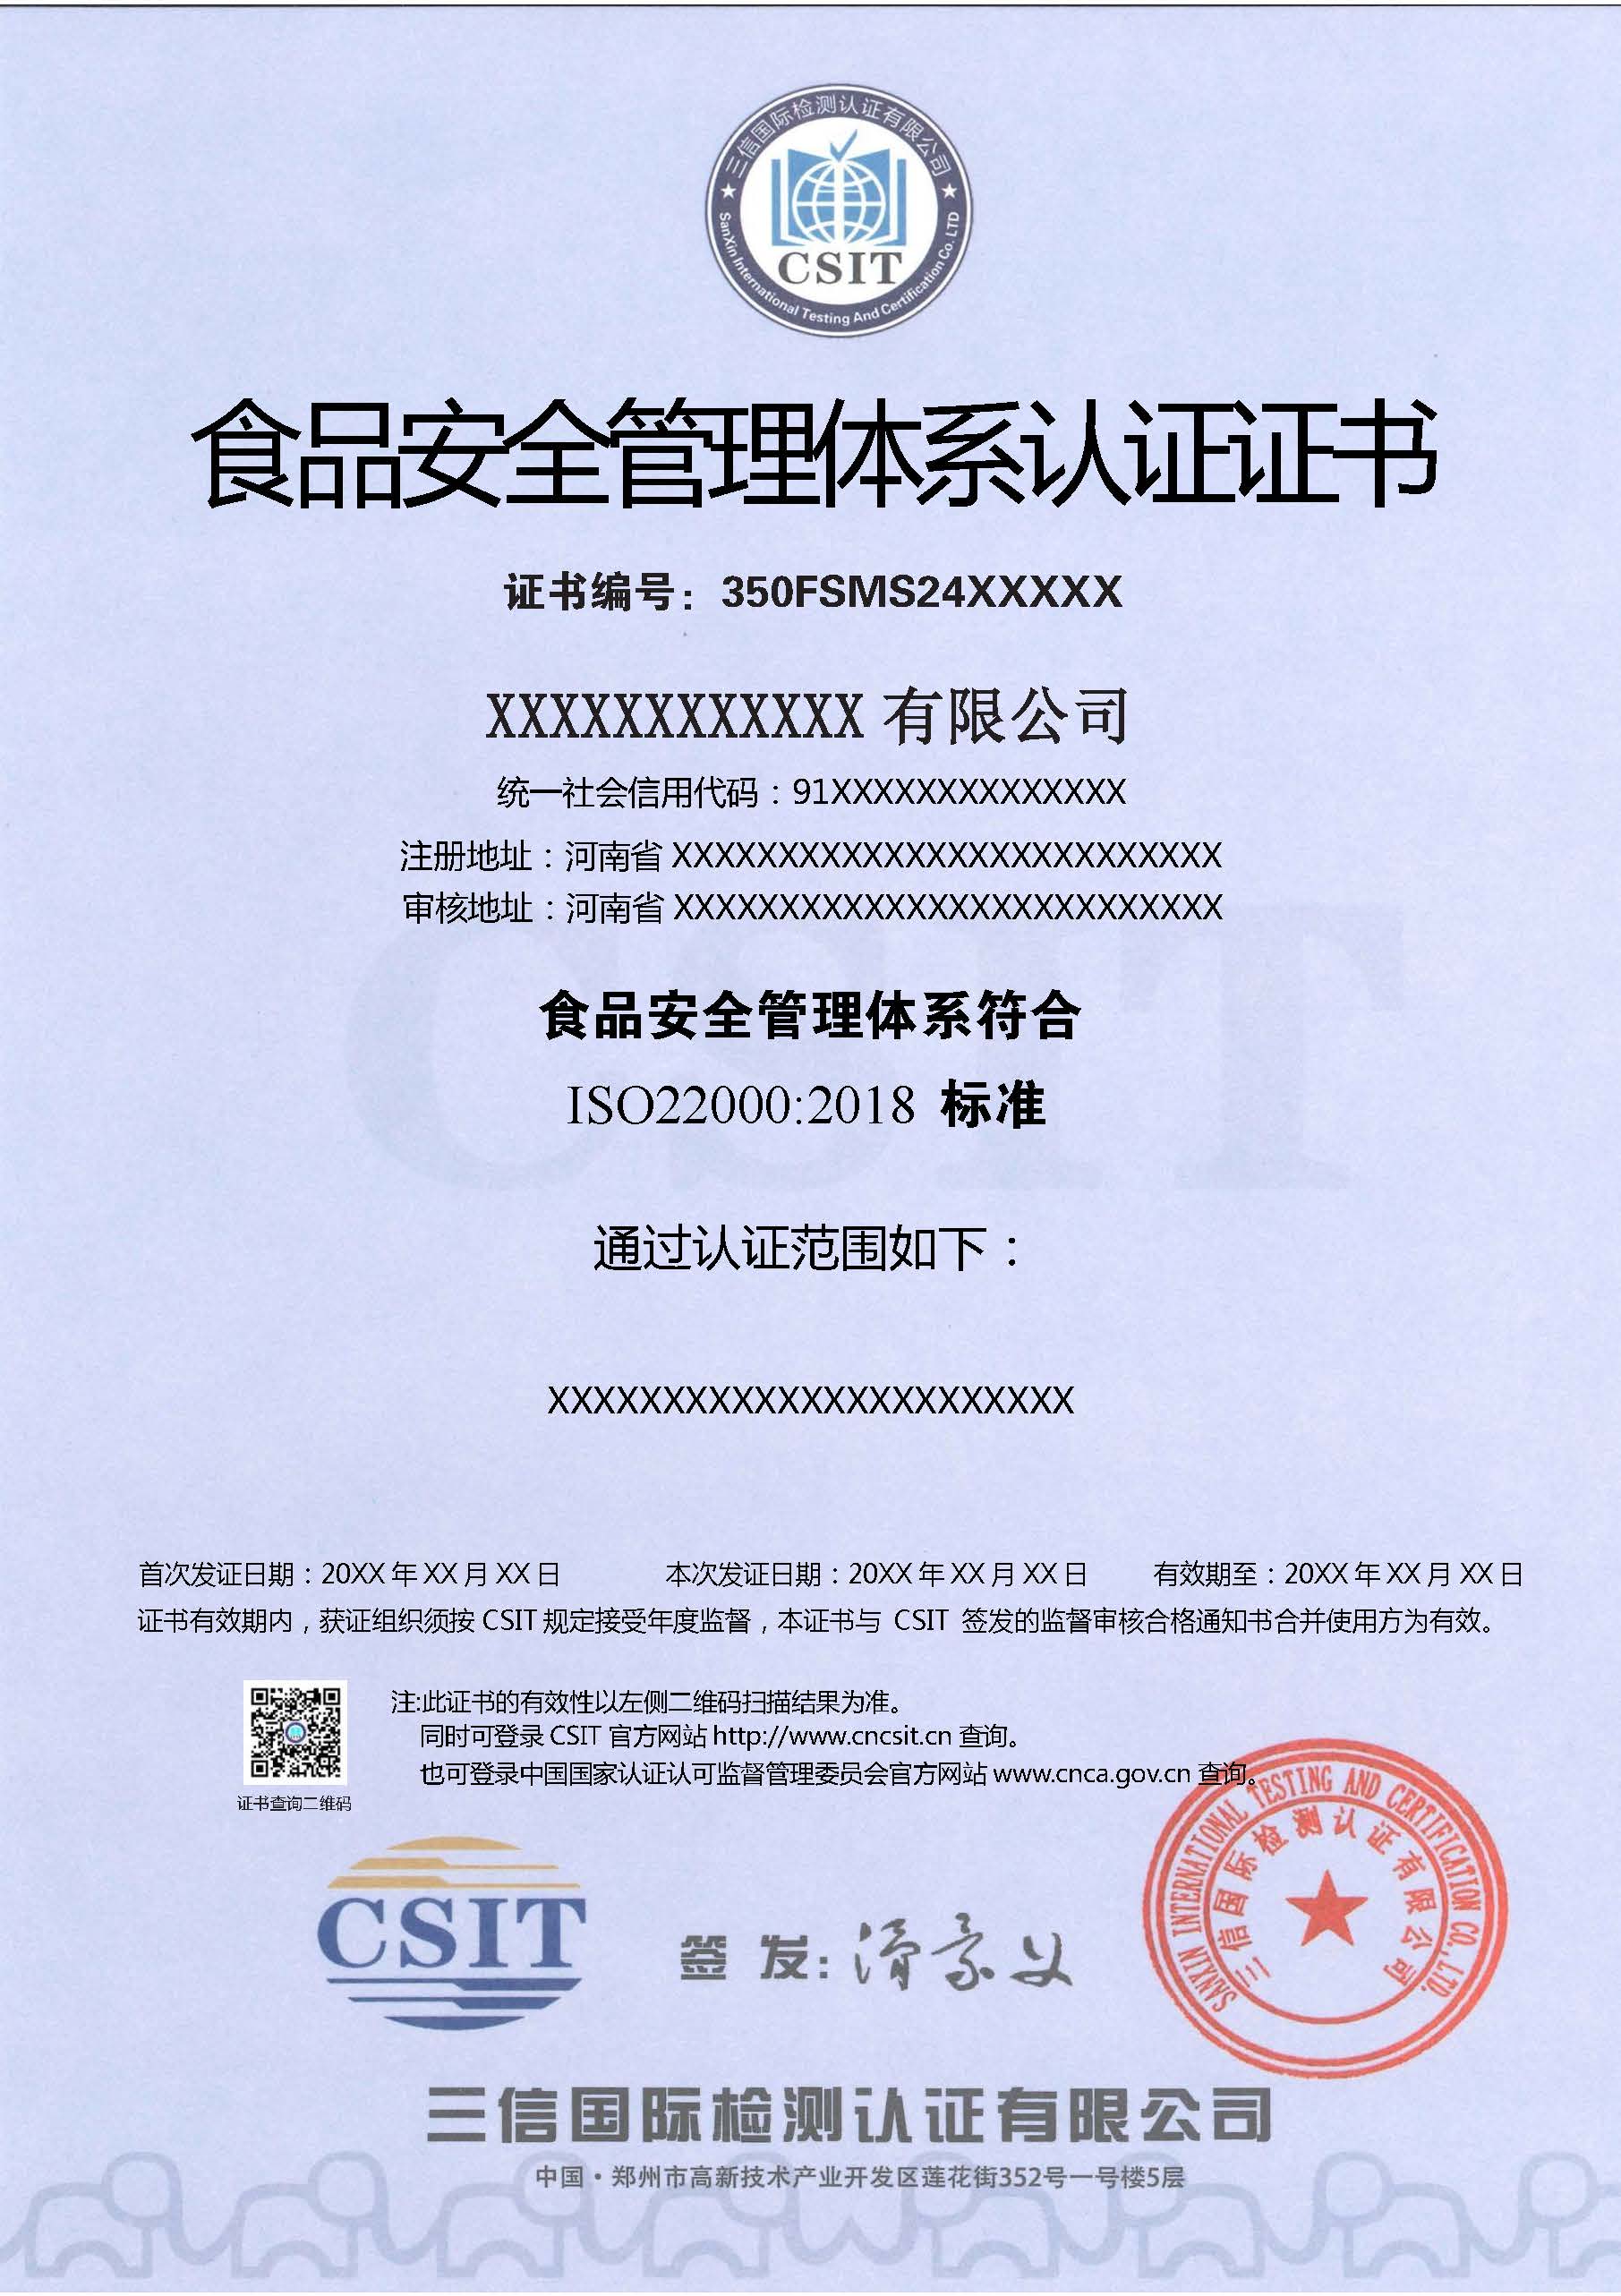 食品安全管理体系认证证书(中文模板) .jpg